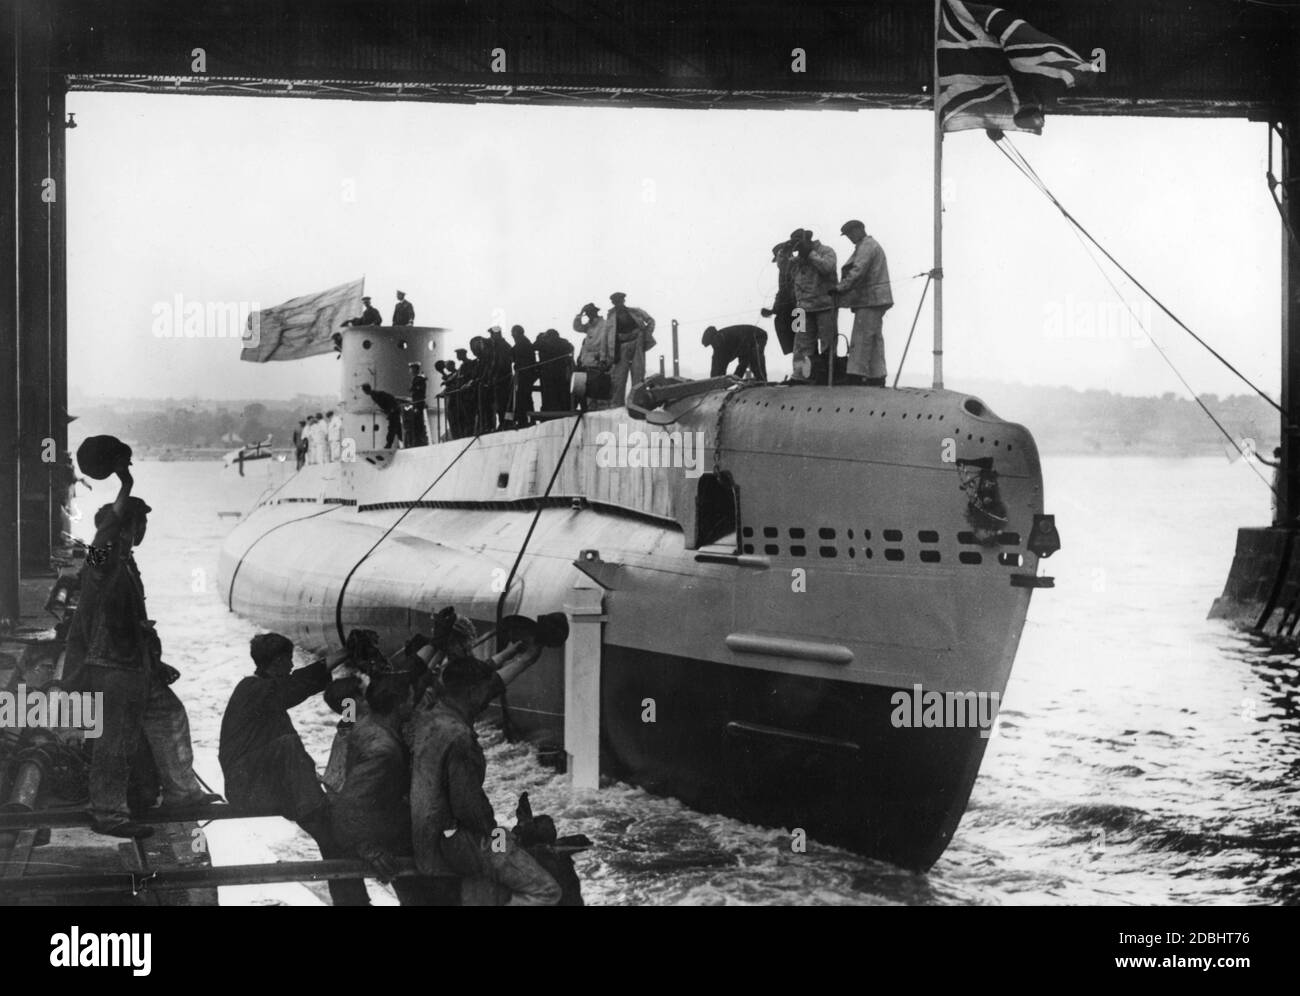 'Le sous-marin 'Sunfish', qui a été construit dans le cadre du programme d'armement britannique, est lancé aux chantiers navals de Chatham dans le comté de Kent.' Banque D'Images